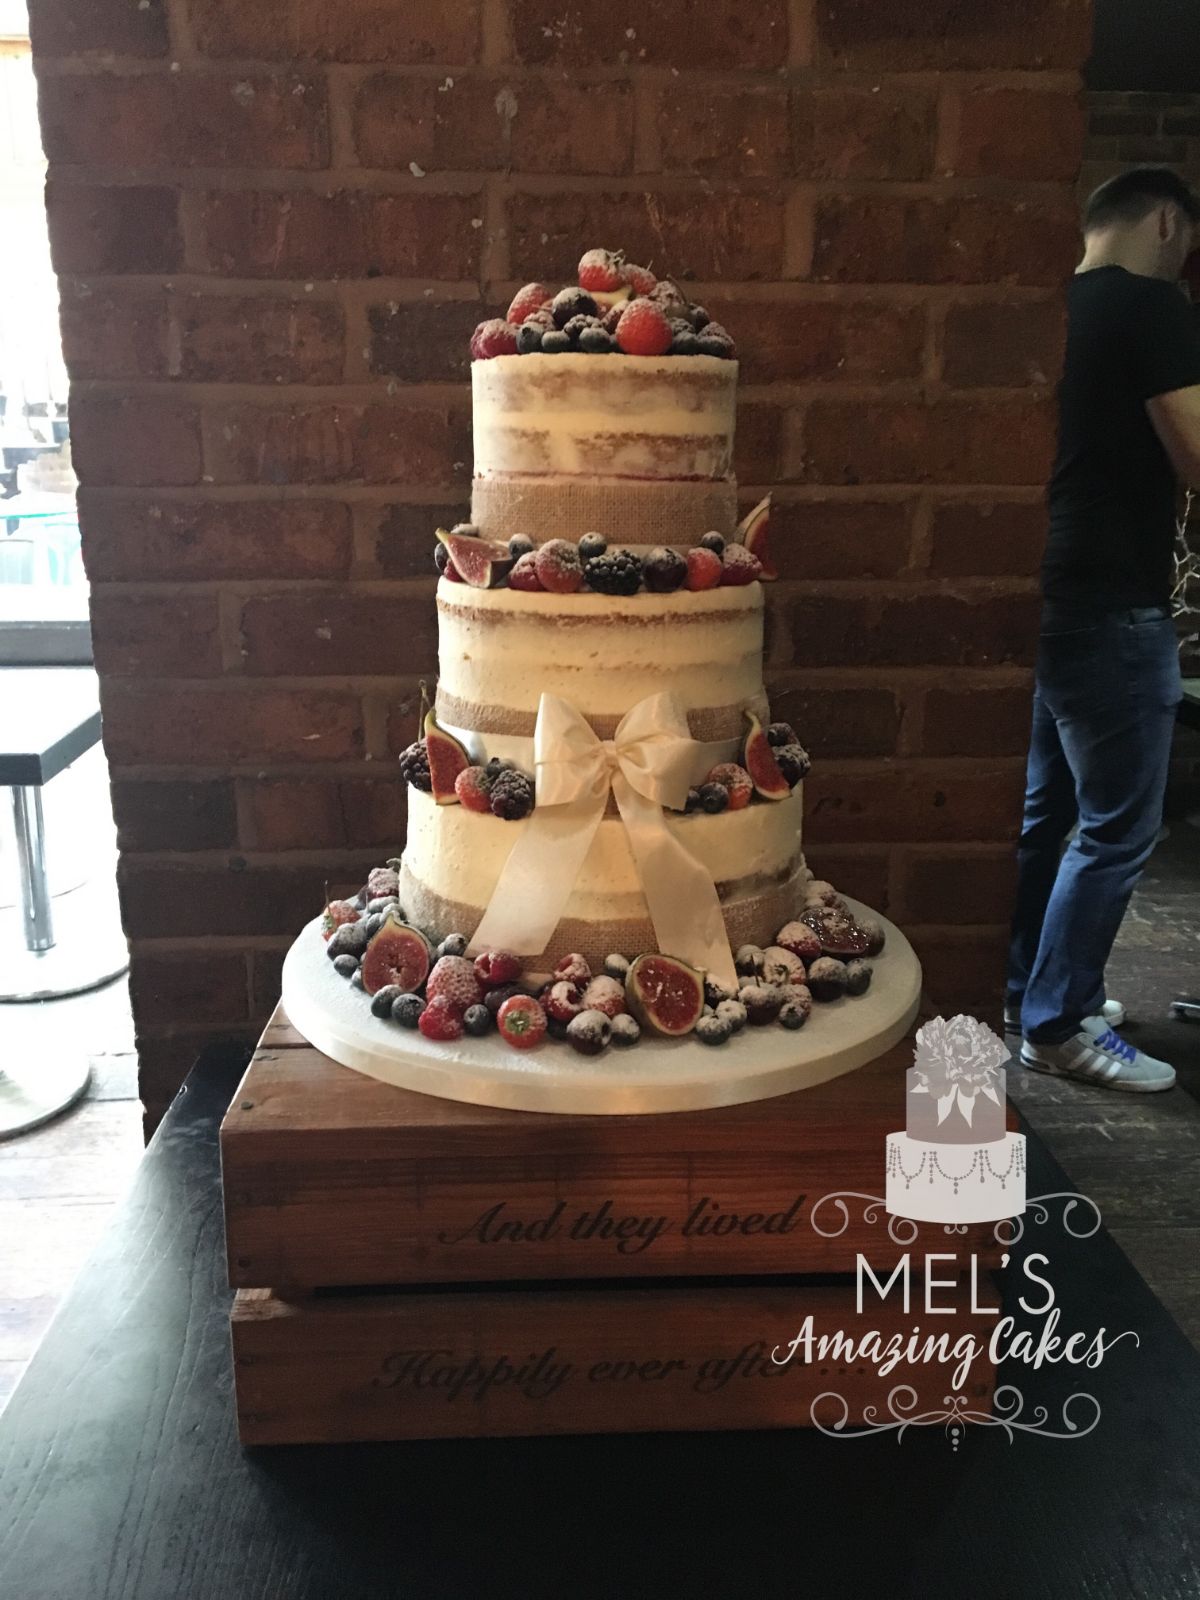 Mel's Amazing Cakes-Image-16